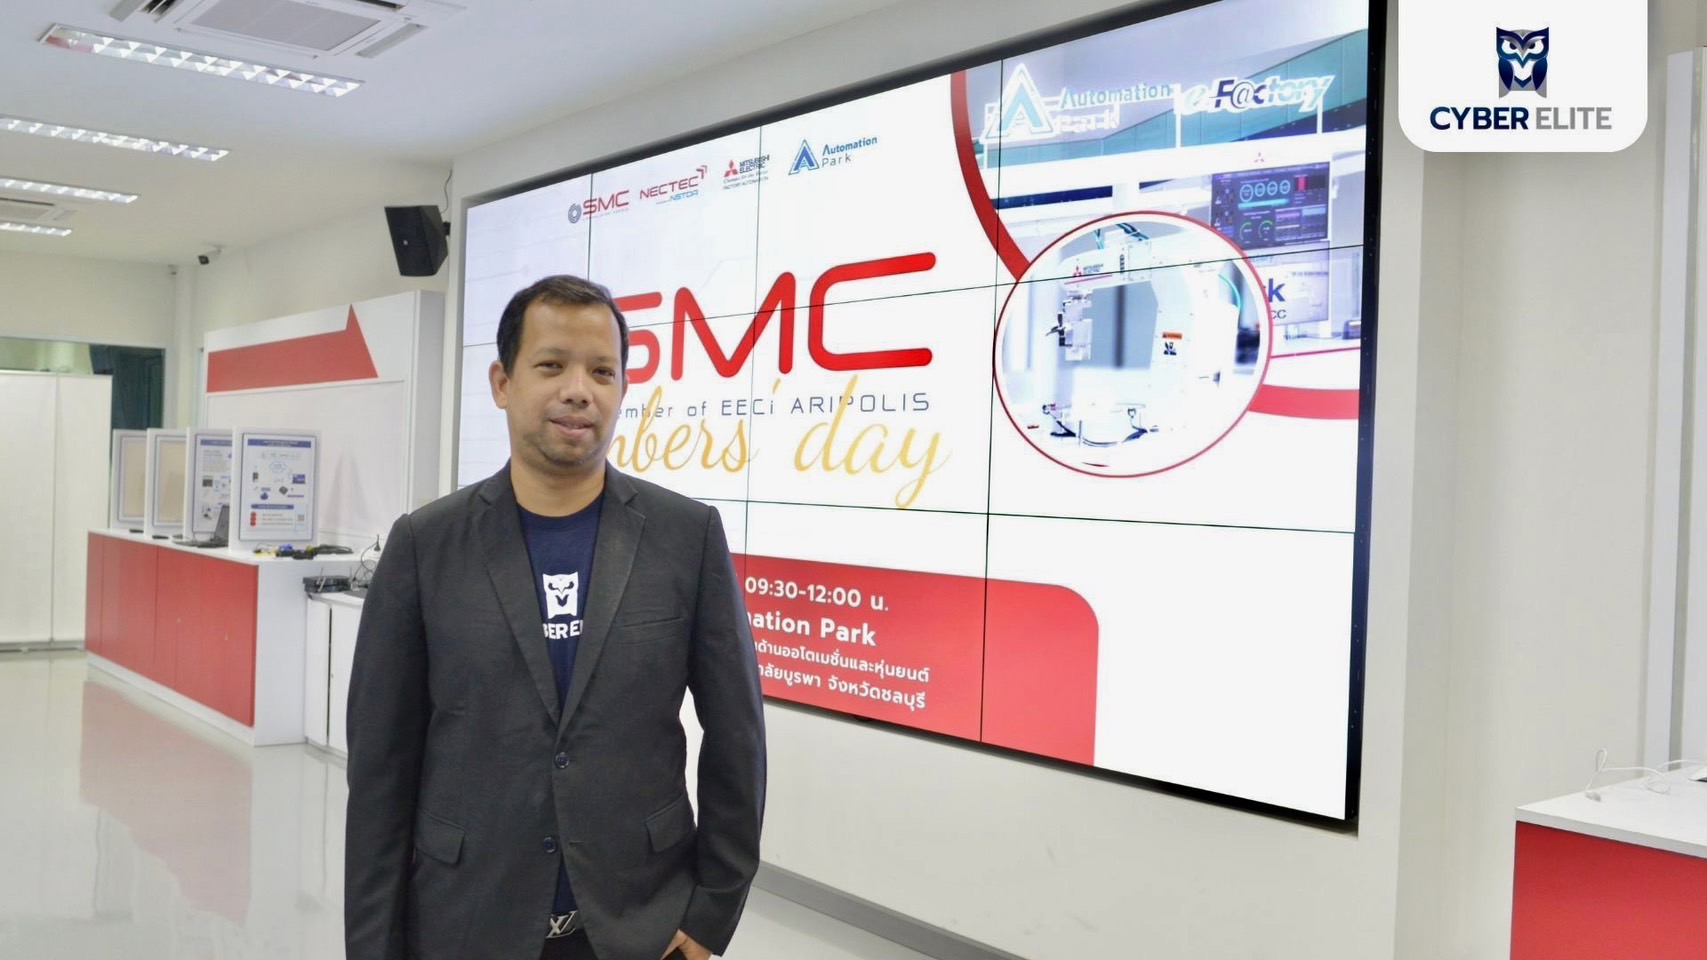 CYBER ELITE ร่วมกิจกรรม SMC members’ day ครั้งที่ 2 จัดขึ้นโดยศูนย์นวัตกรรมการผลิตยั่งยืน (SMC) ณ EEC Automation Park มหาวิทยาลัยบูรพา จ.ชลบุรี